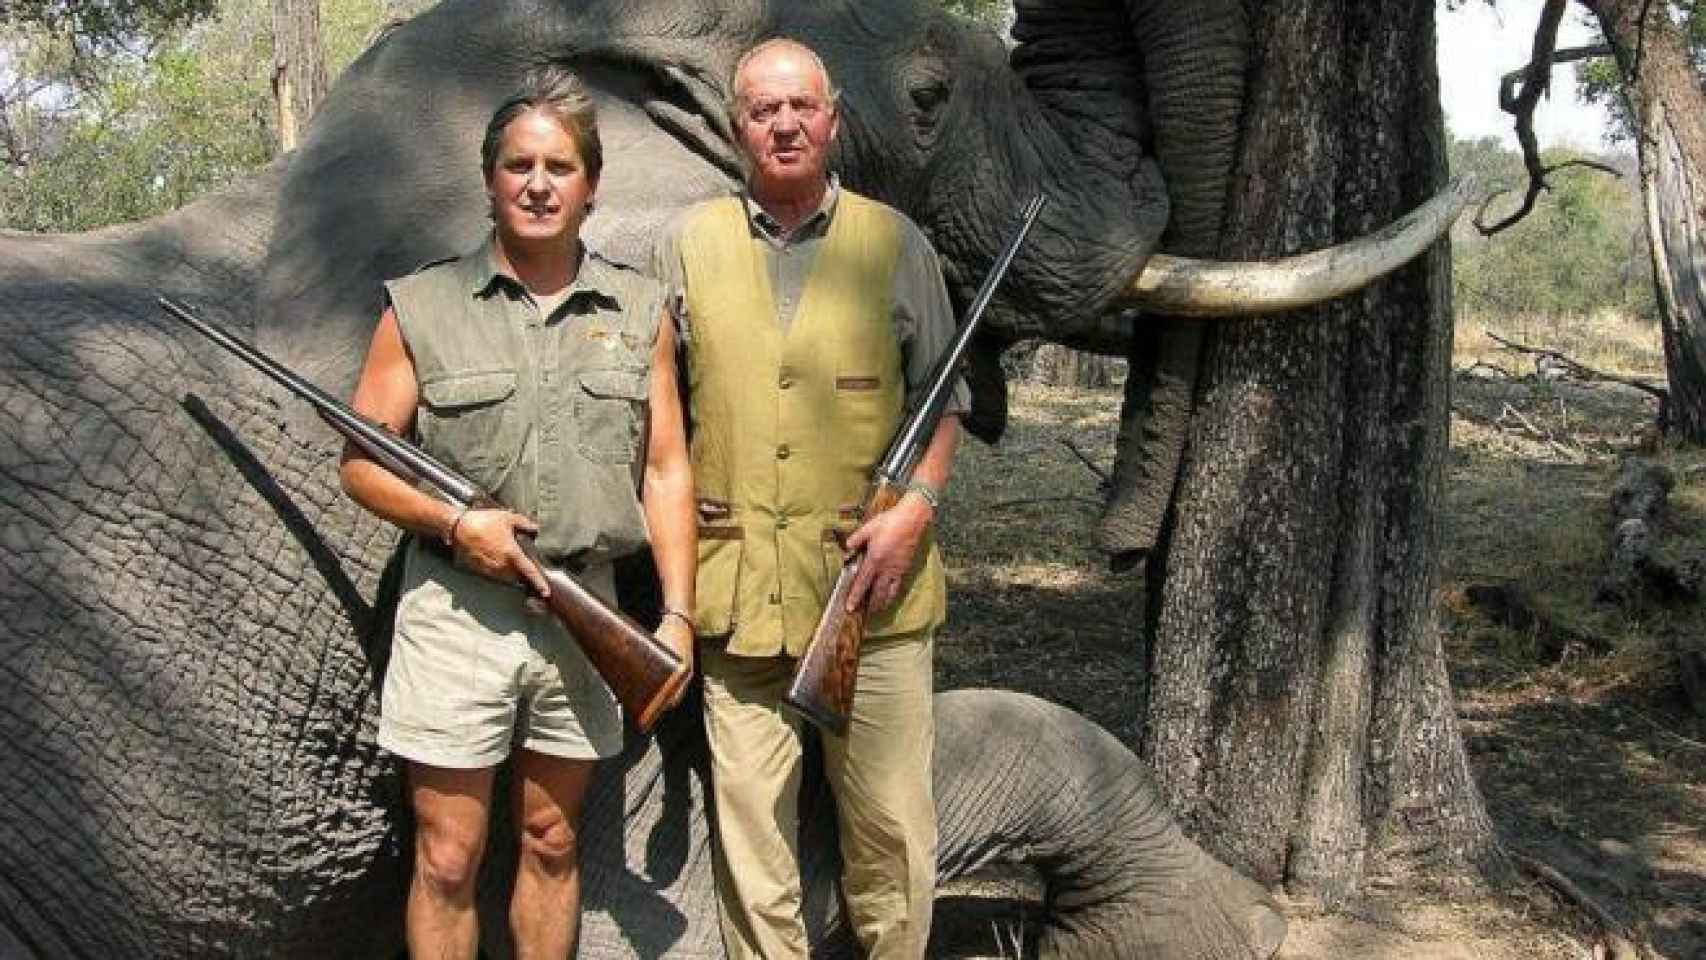 La foto del rey cazando elefantes fue uno de sus momentos más polémicos.